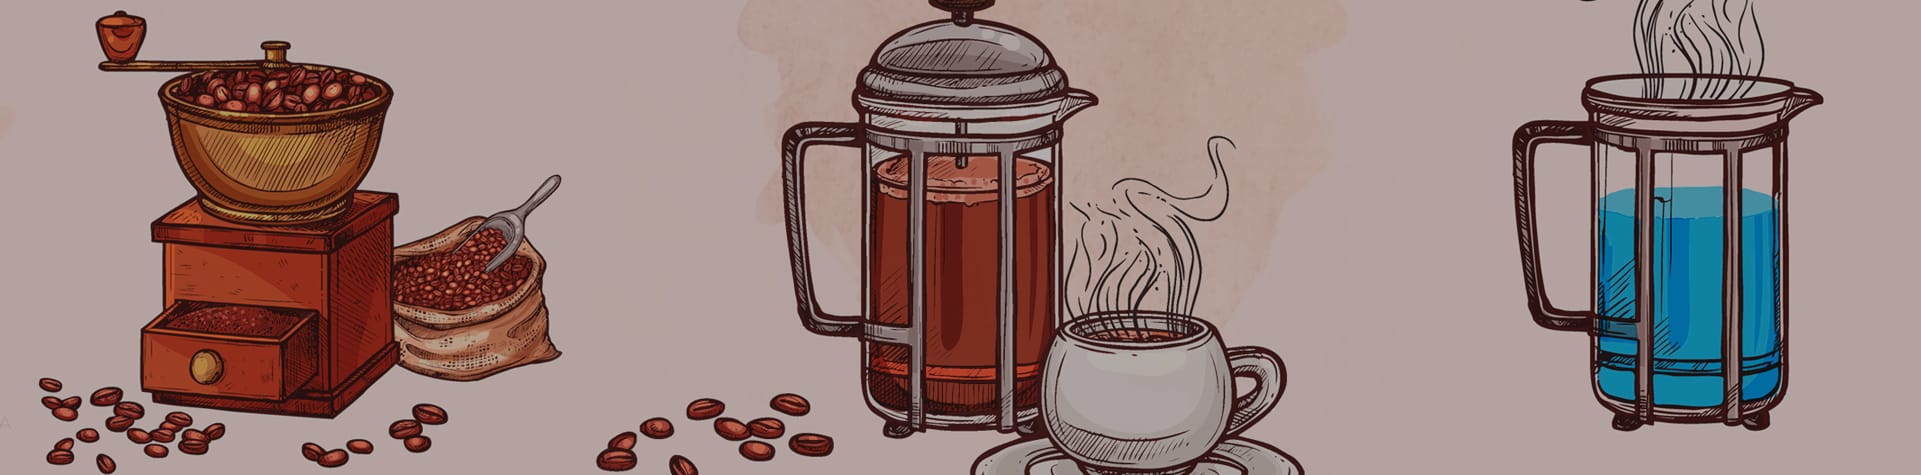 Curso Online de preparación de café en Prensa Francesa – El Laboratorio de  Café